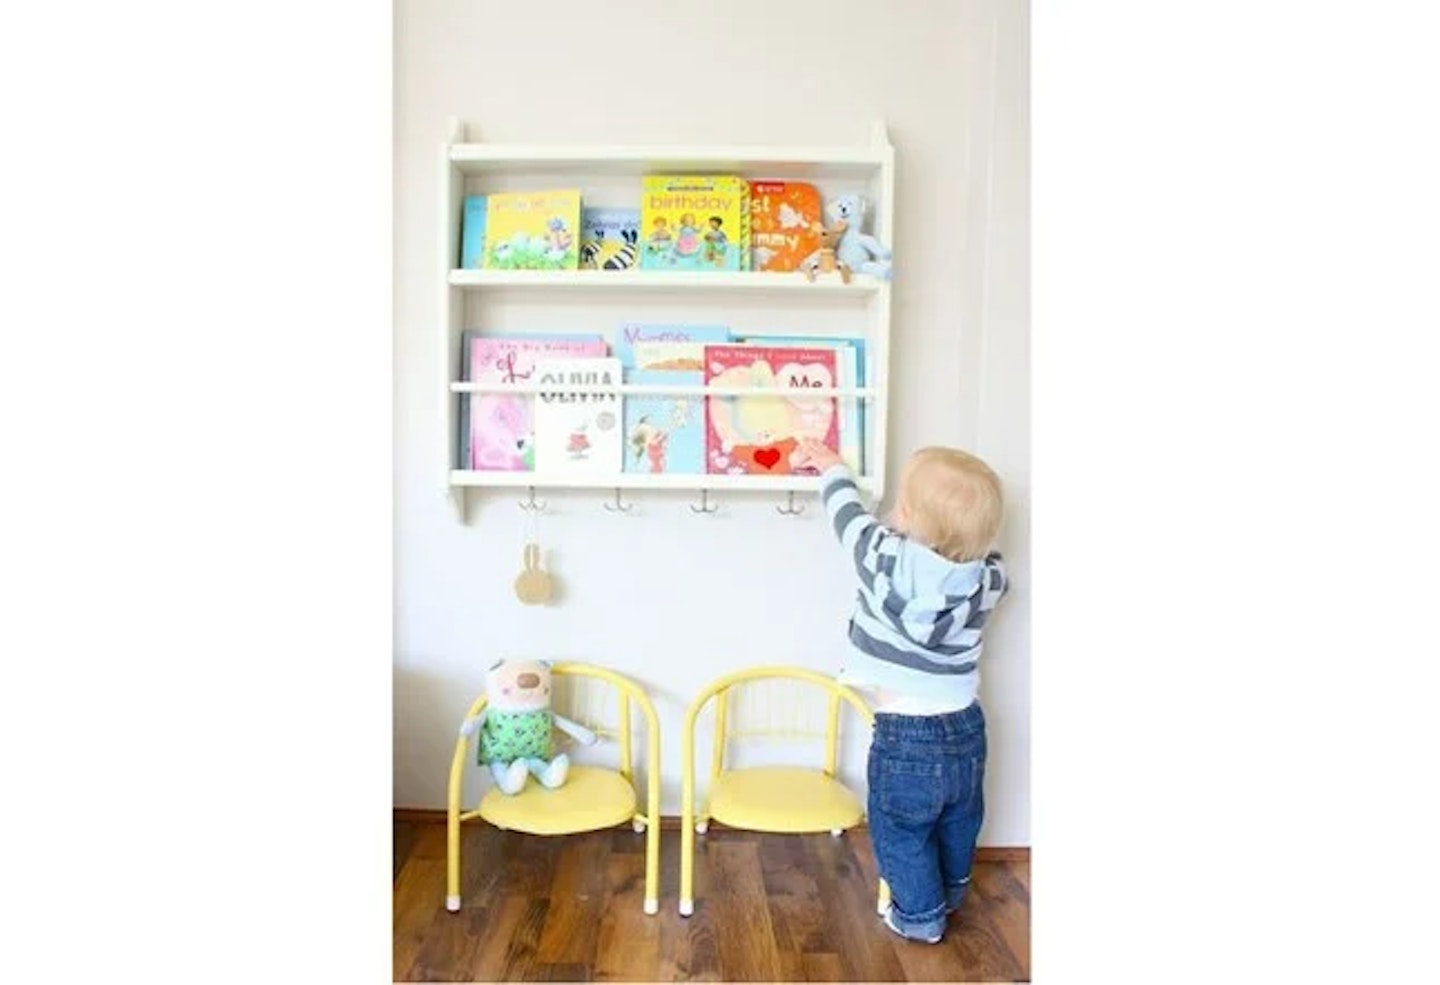 Toddler reaching for books on shelves